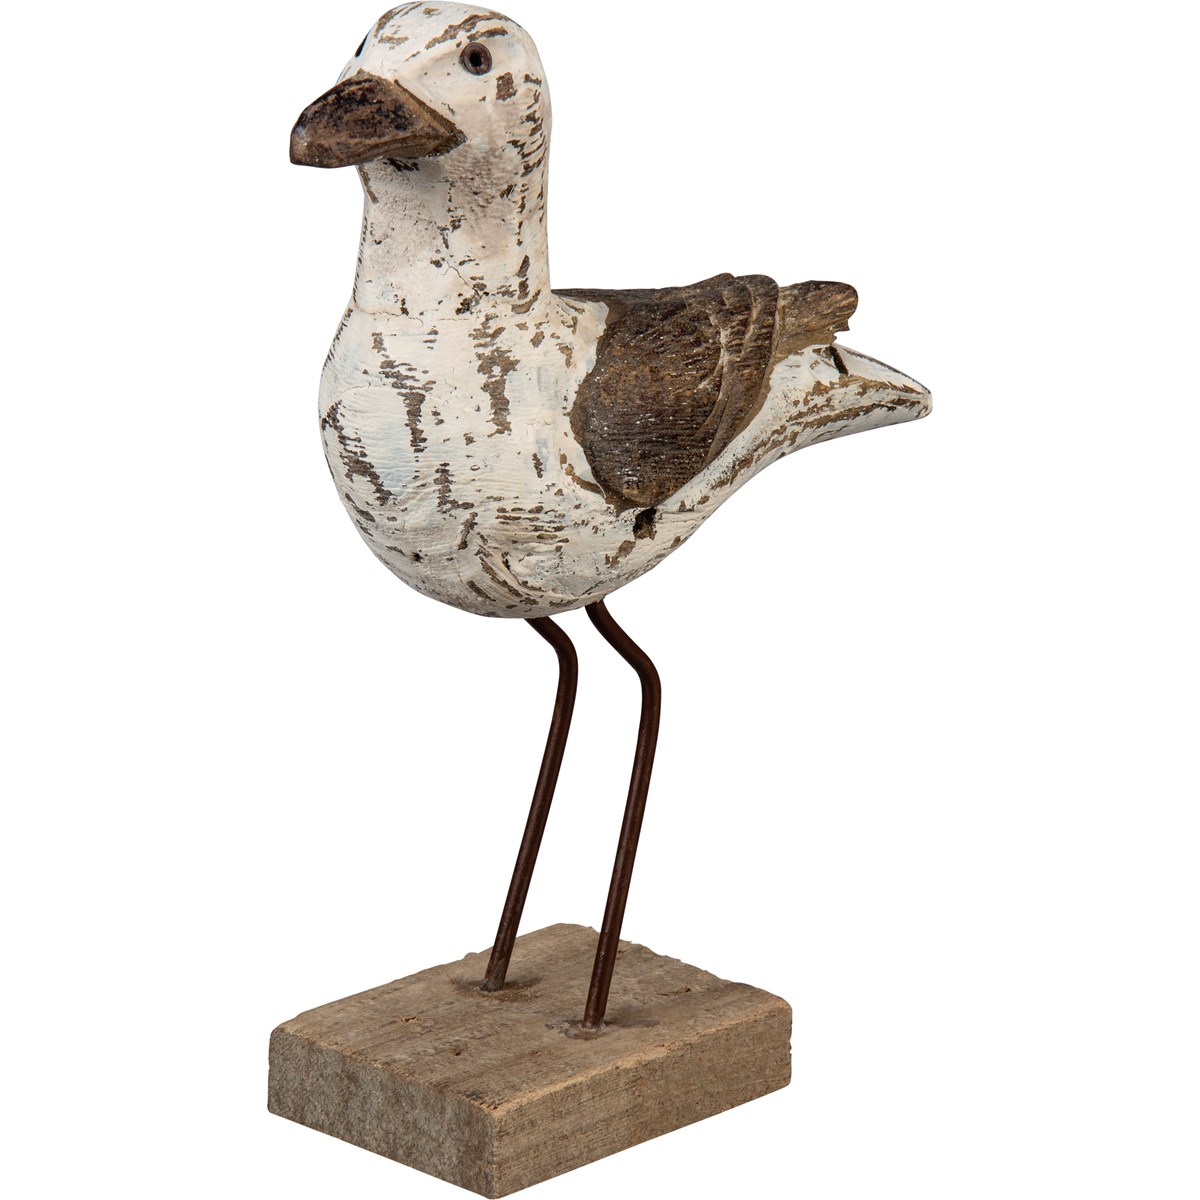 Sitter - Seagull - 7" x 8.50" x 2.50" - Wood, Metal